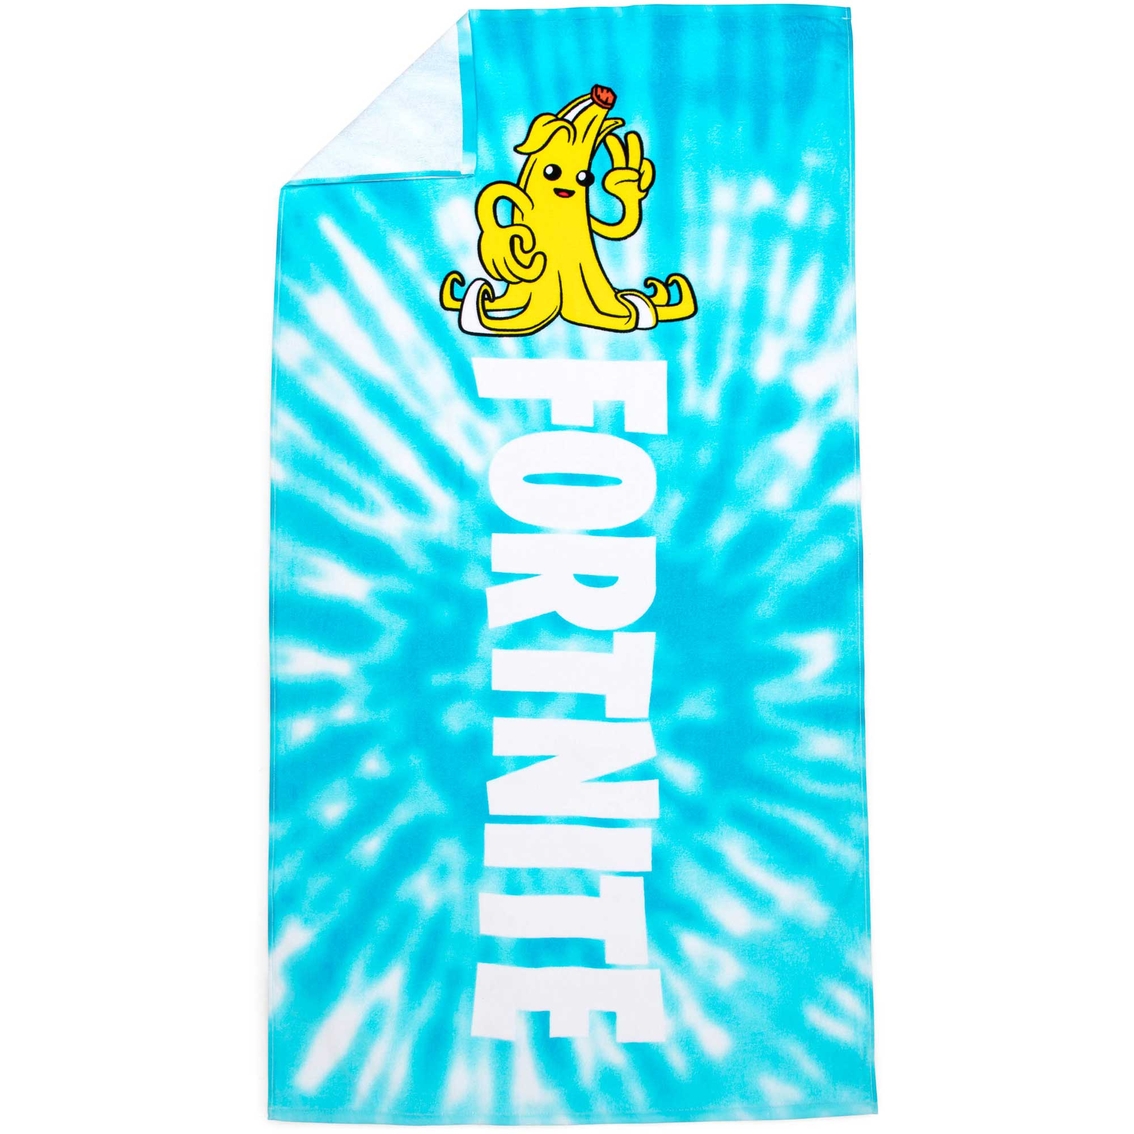 Fortnite Beach Towel - Image 2 of 2